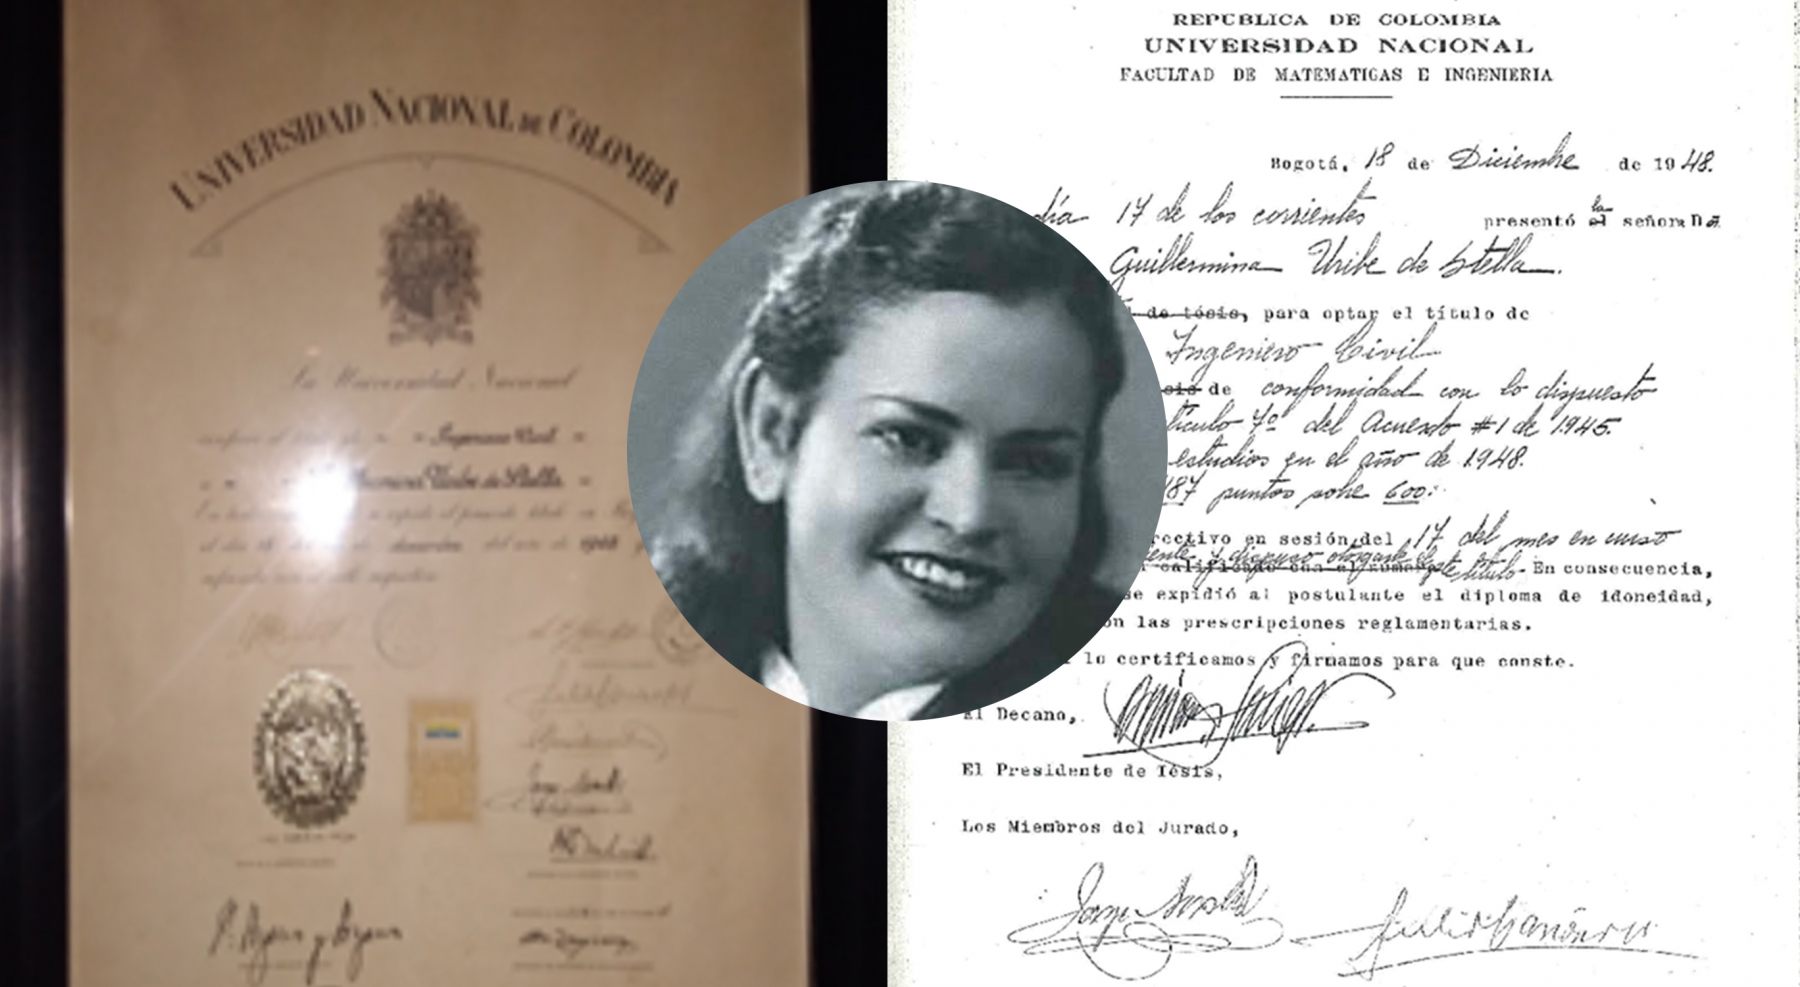 Primera Ingeniera Civil Universidad Nacional de Colombia - Bogotá 18 Diciembre 1948